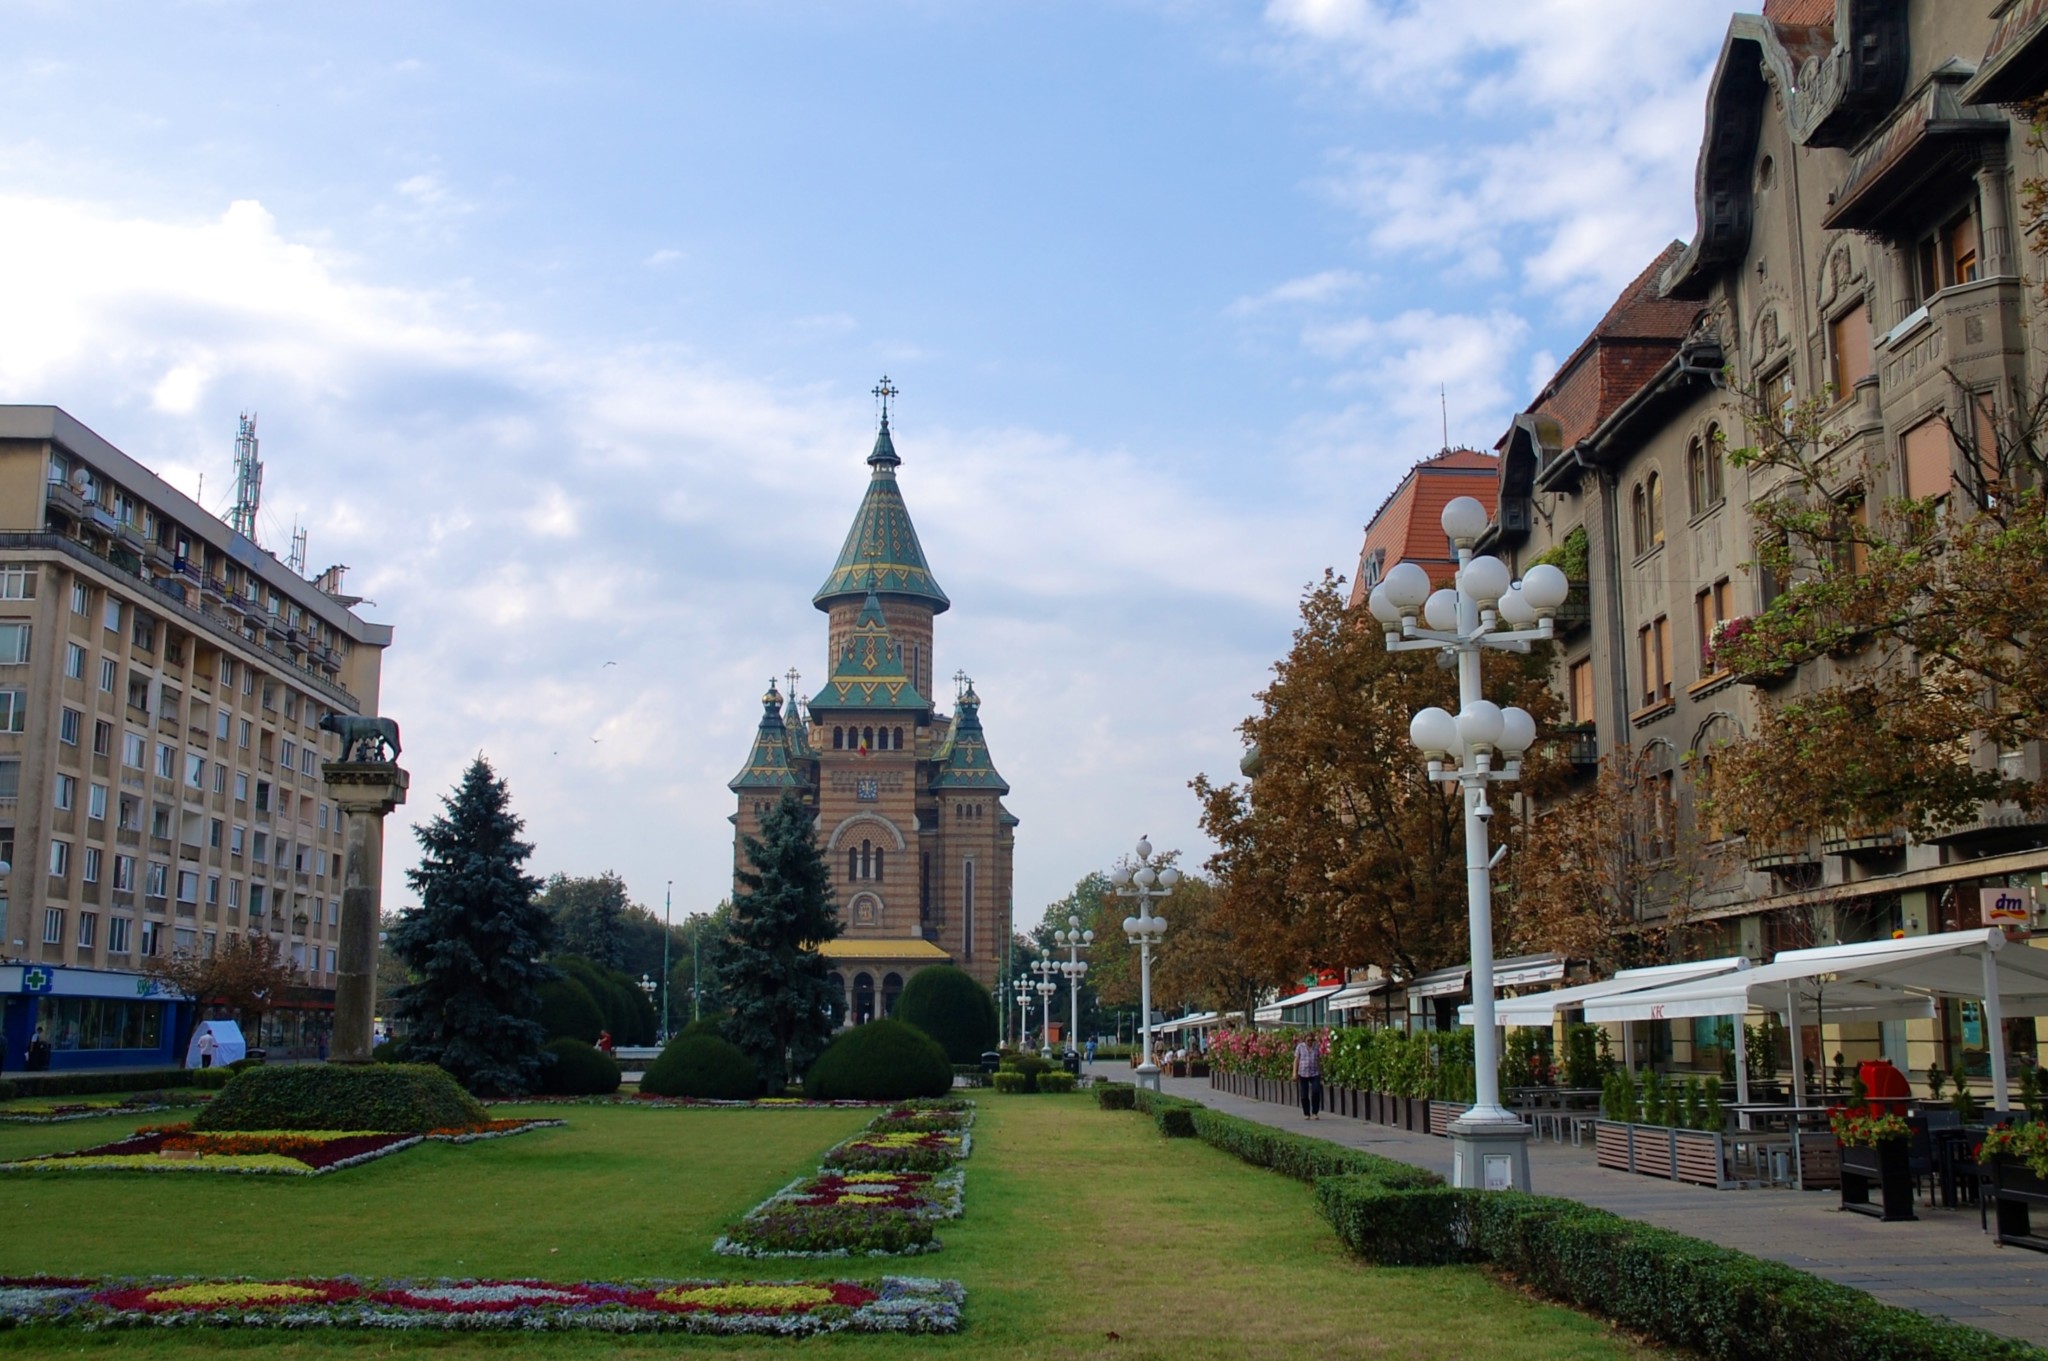 Timisoara in Rumänien ist ein alternativer Städtetrip in Europa